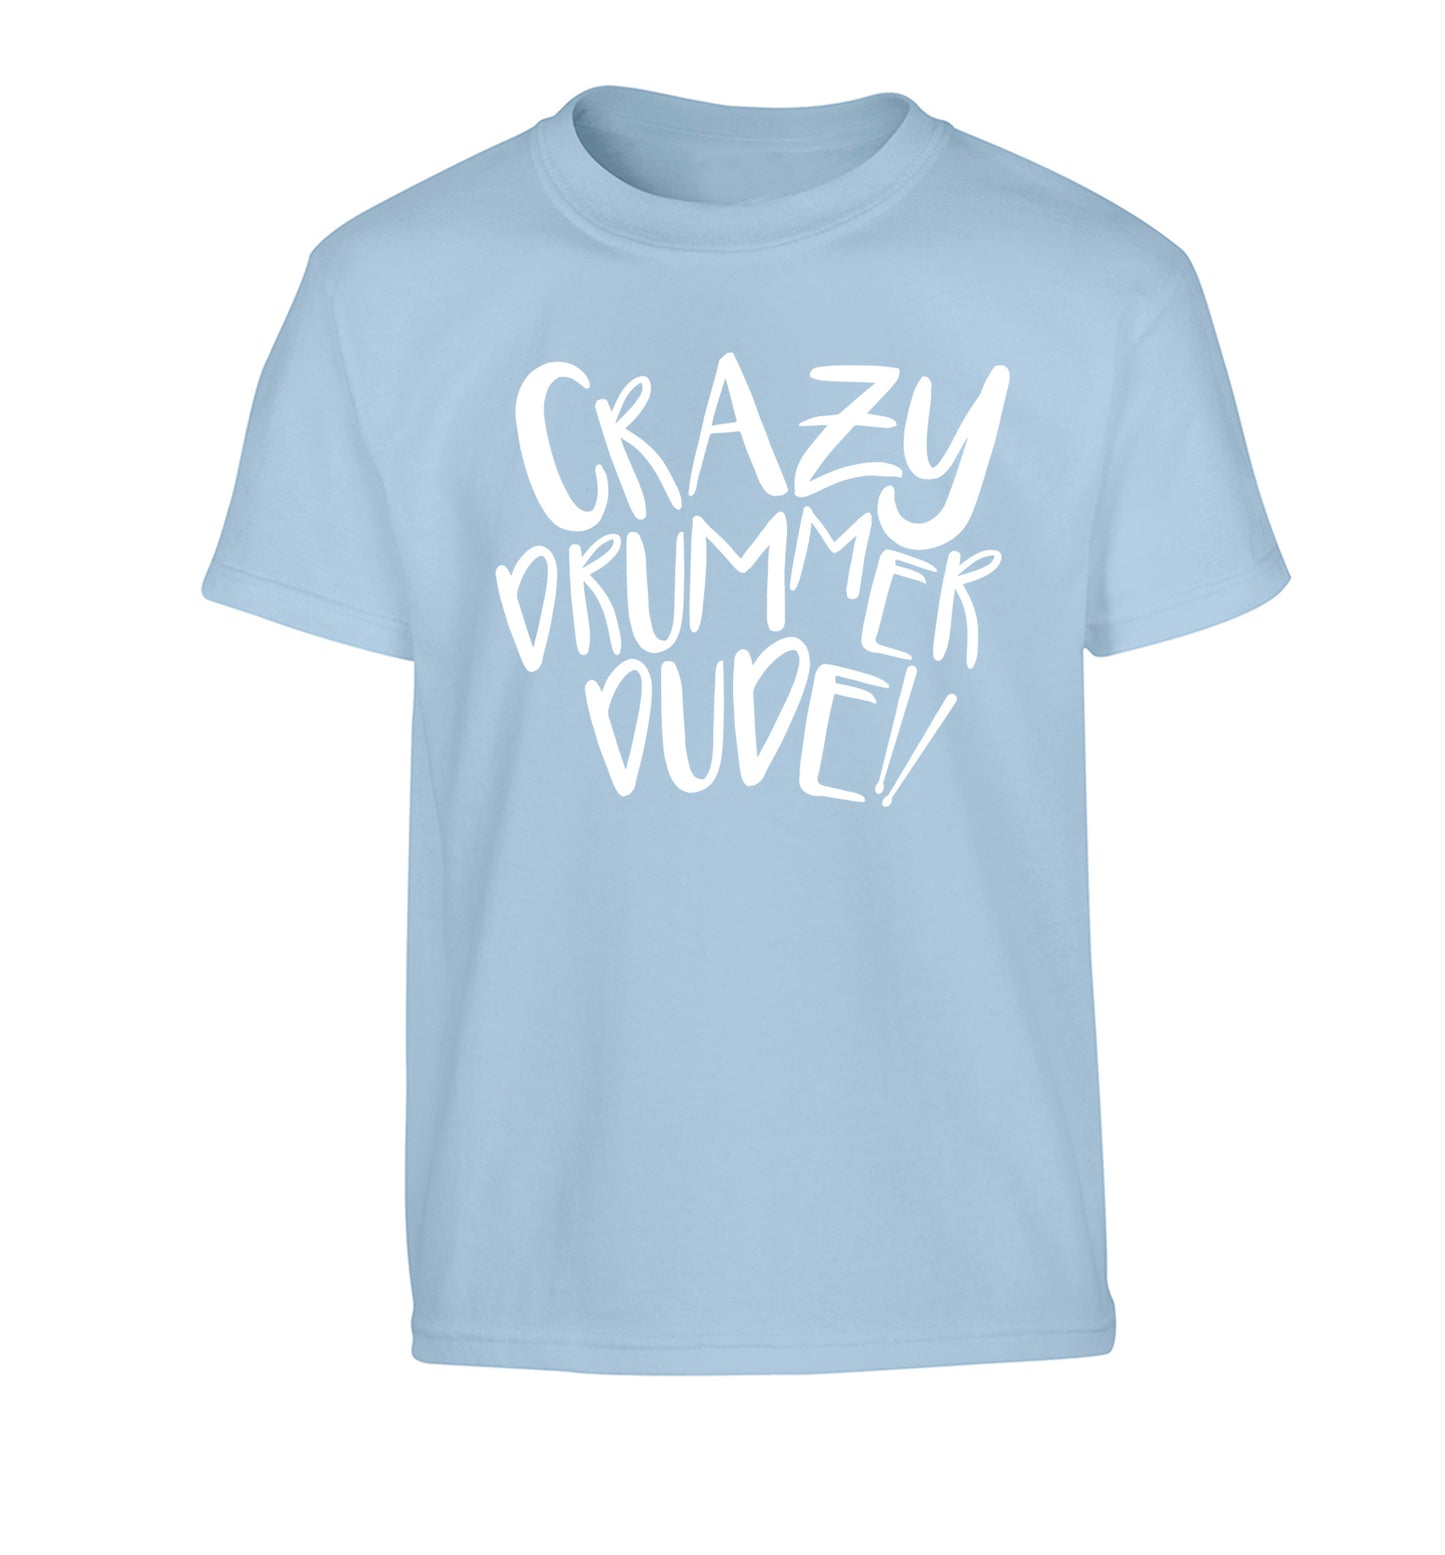 Crazy drummer dude Children's light blue Tshirt 12-14 Years